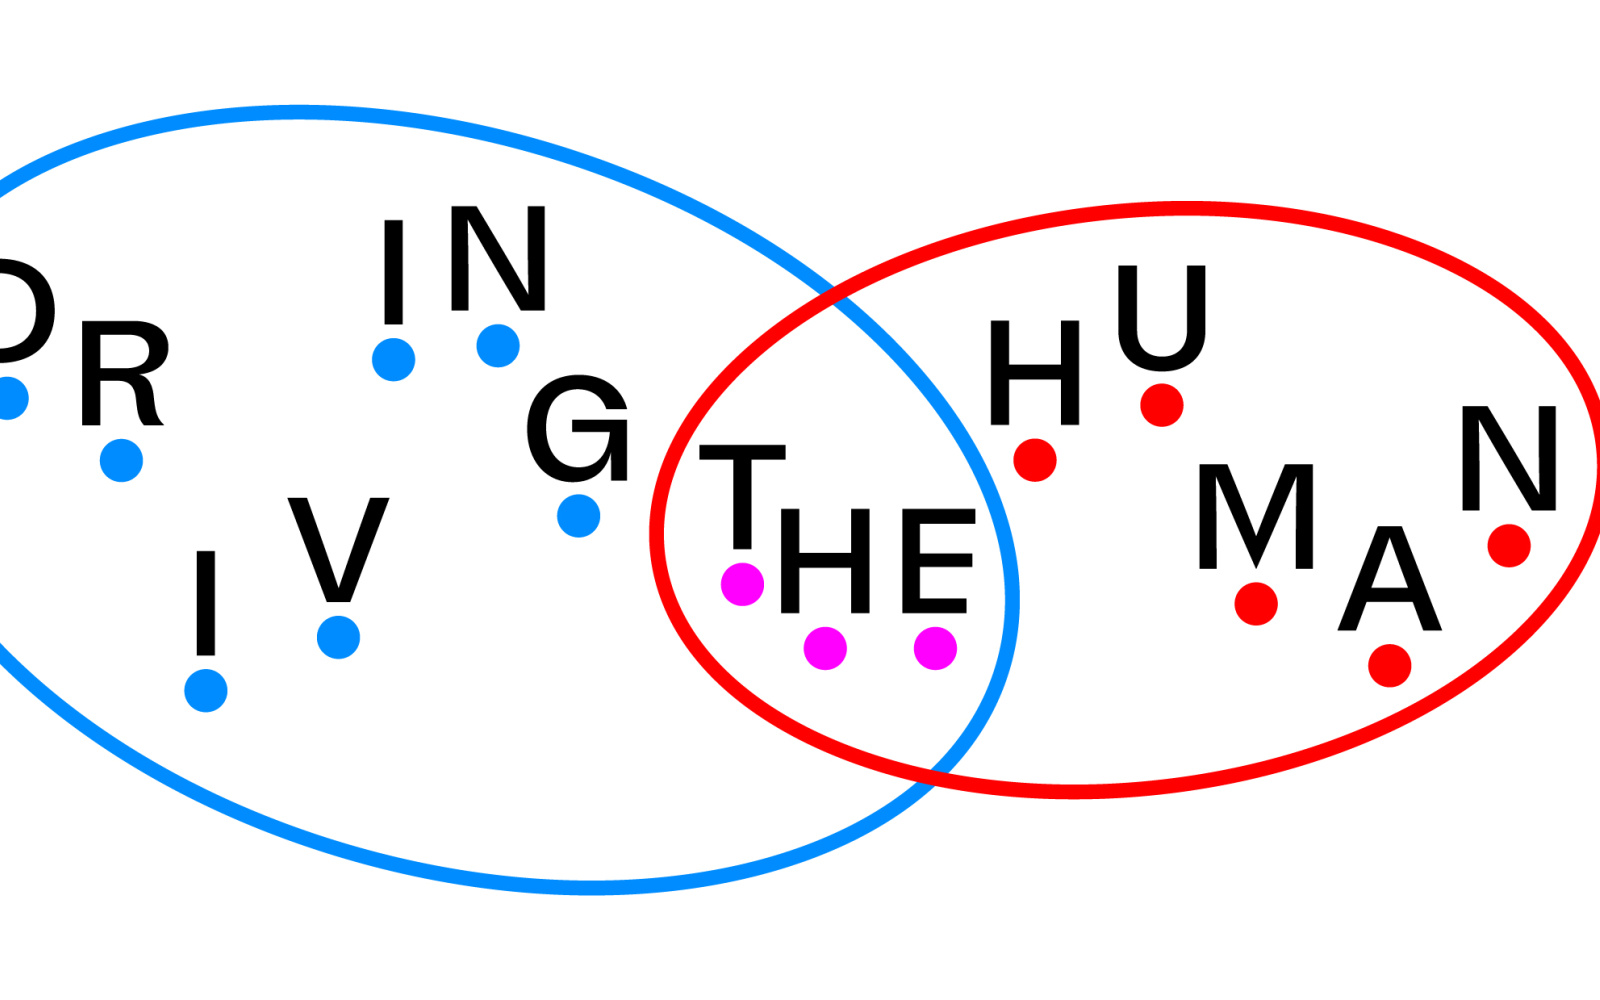 Zwei Kreise überschneiden sich. Der linke Kreis besagt "Driving", der linke "Human" und die Schnittmenge trägt "The" in sich. Alle Buchstaben befinden sich auf einzelnen Punkten.